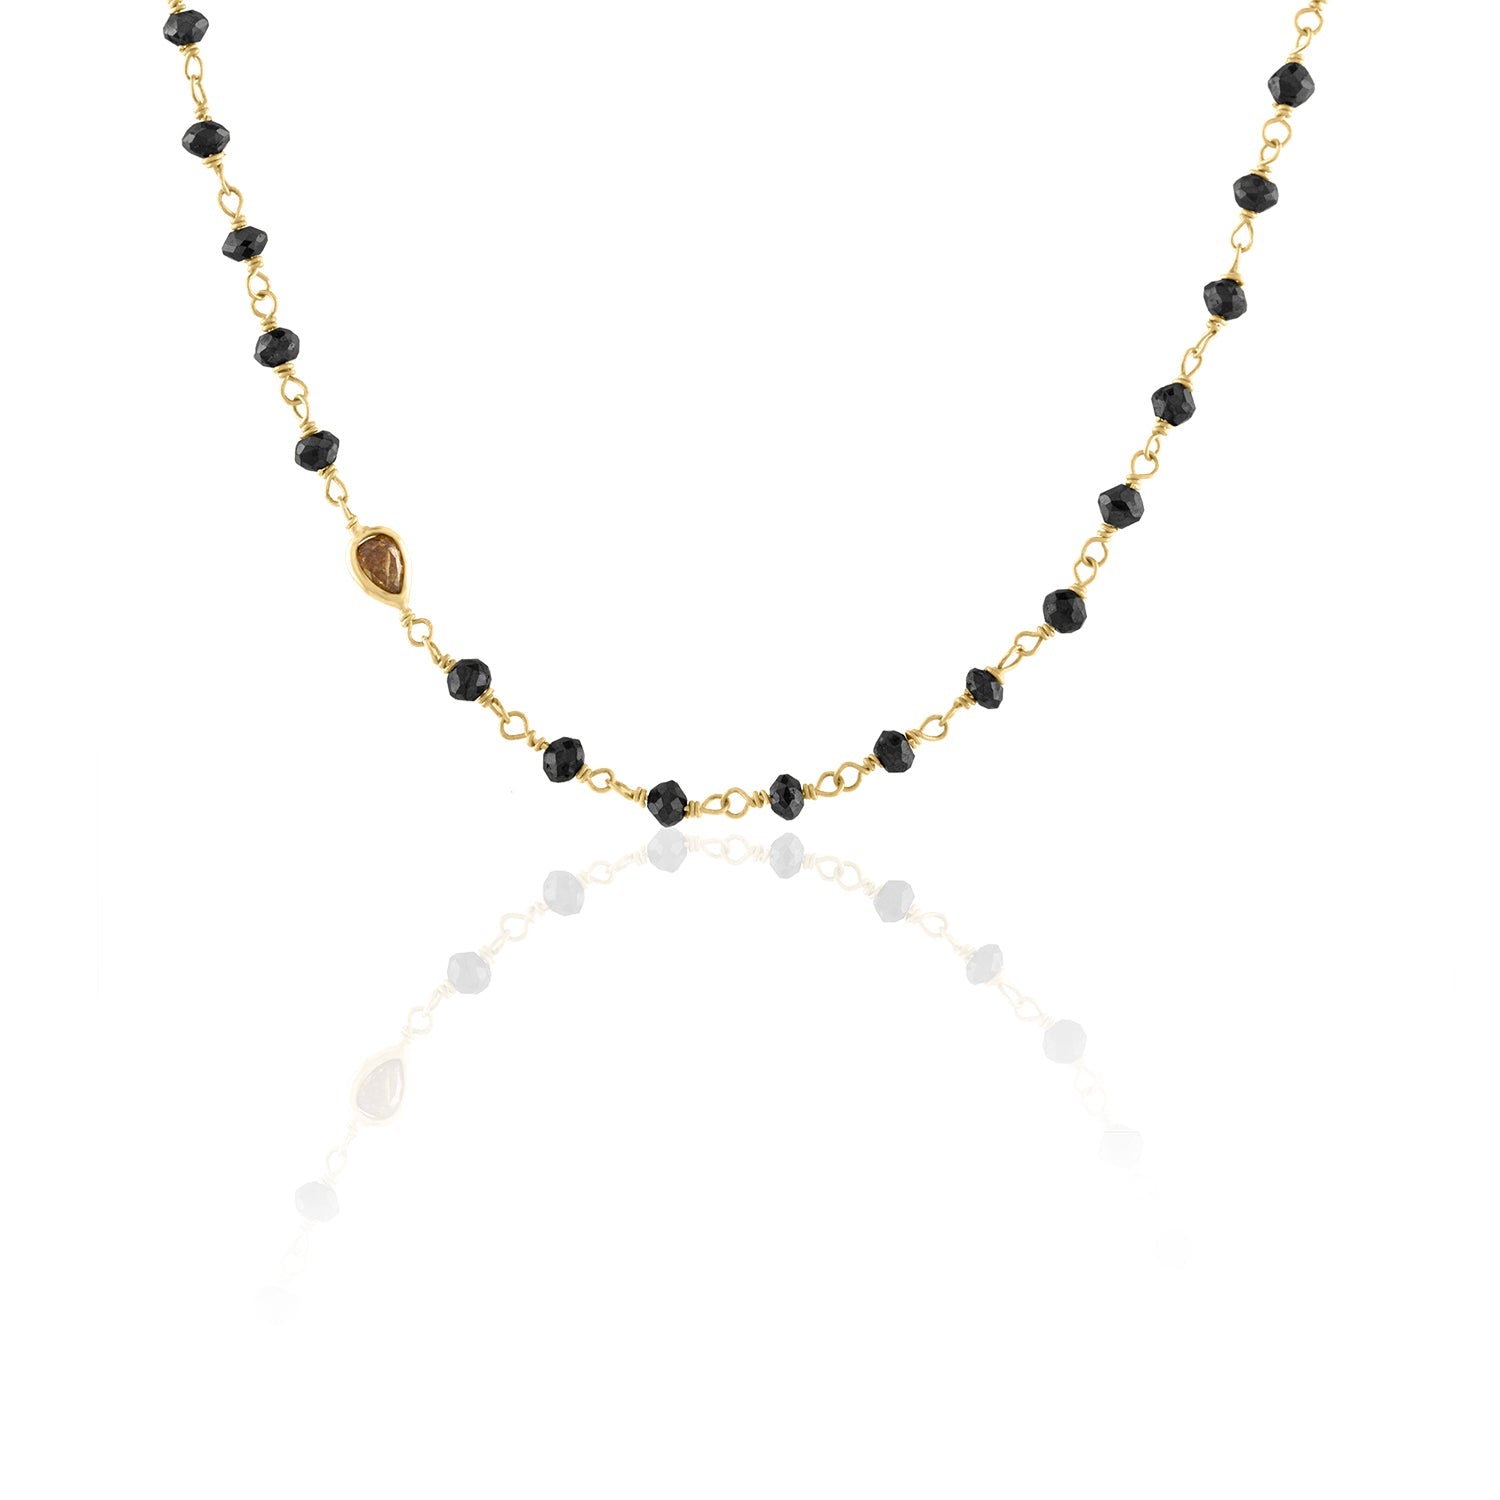 Black Diamond Bead Chain with Colored Diamond Accent Chains Debra Navarro 